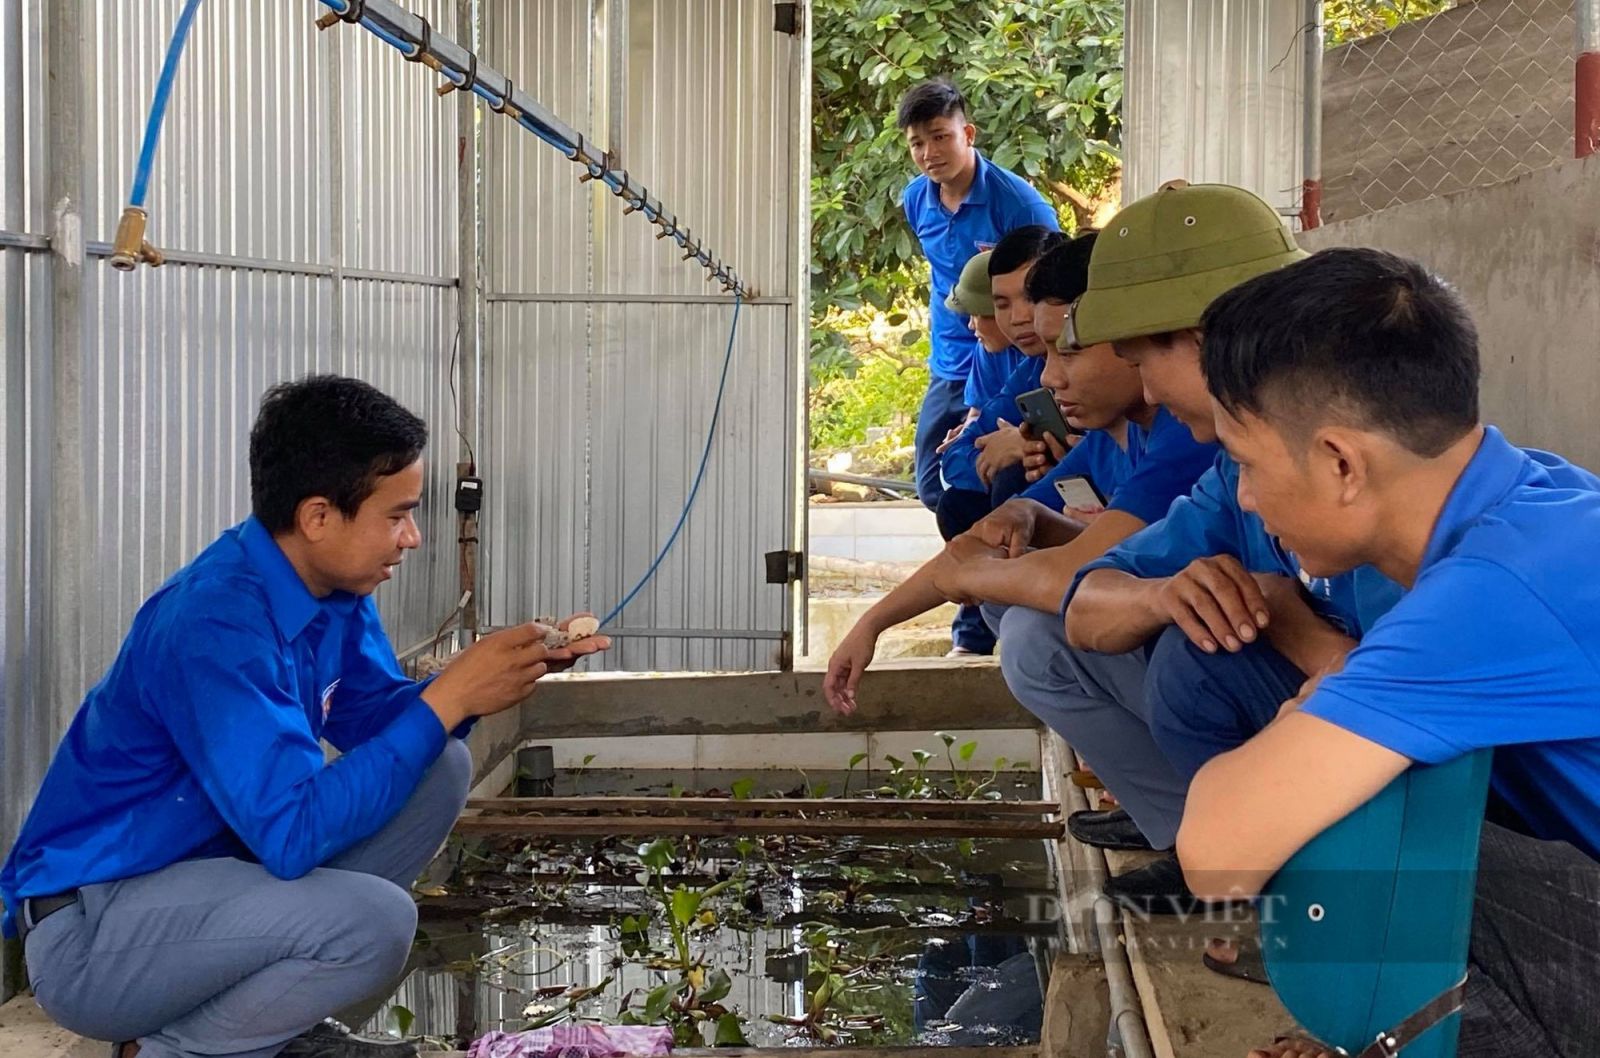 Anh Duy Luých ở Nghệ An biến những ao sình thành nơi hái ra tiền, giúp cả xóm có việc làm - Ảnh 3.